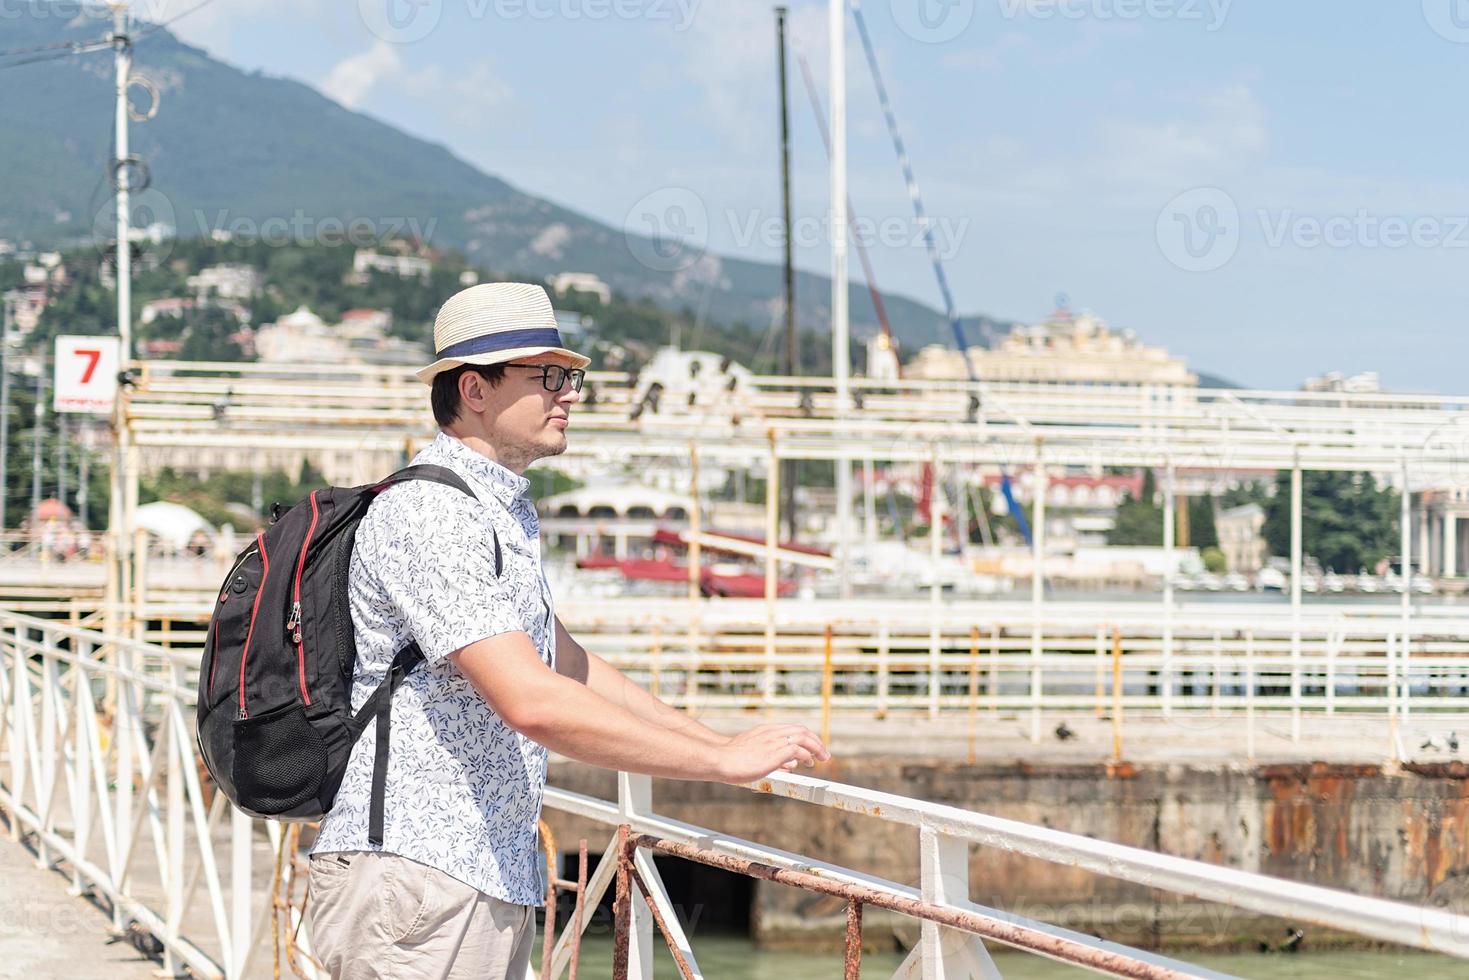 turista caminhando no porto marítimo, barcos e iates ao fundo foto